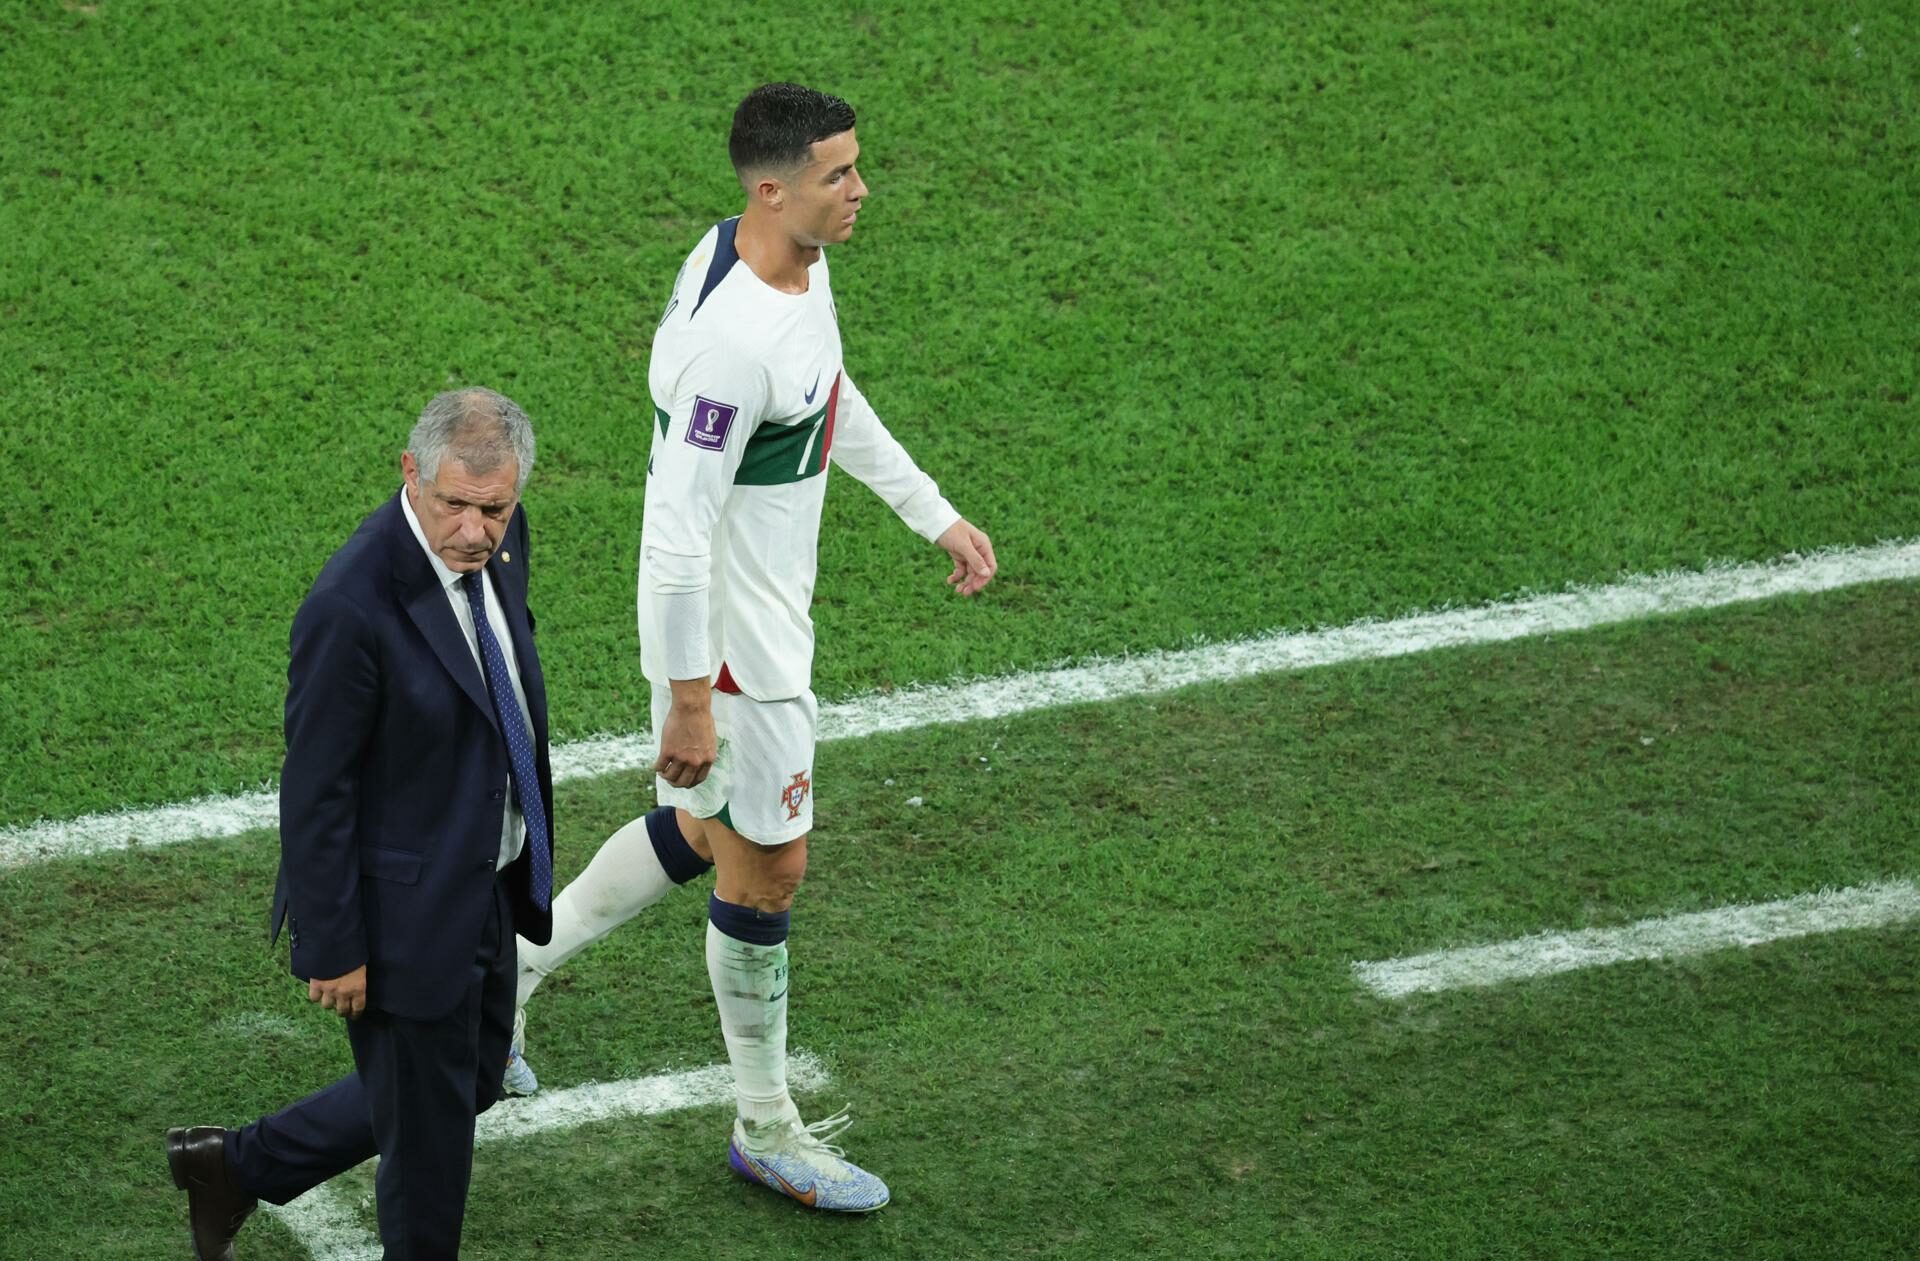 Cristiano Ronaldo al abandonar el terreno de juego en el duelo de Portugal ante Corea del Sur. Foto: Agencia EFE